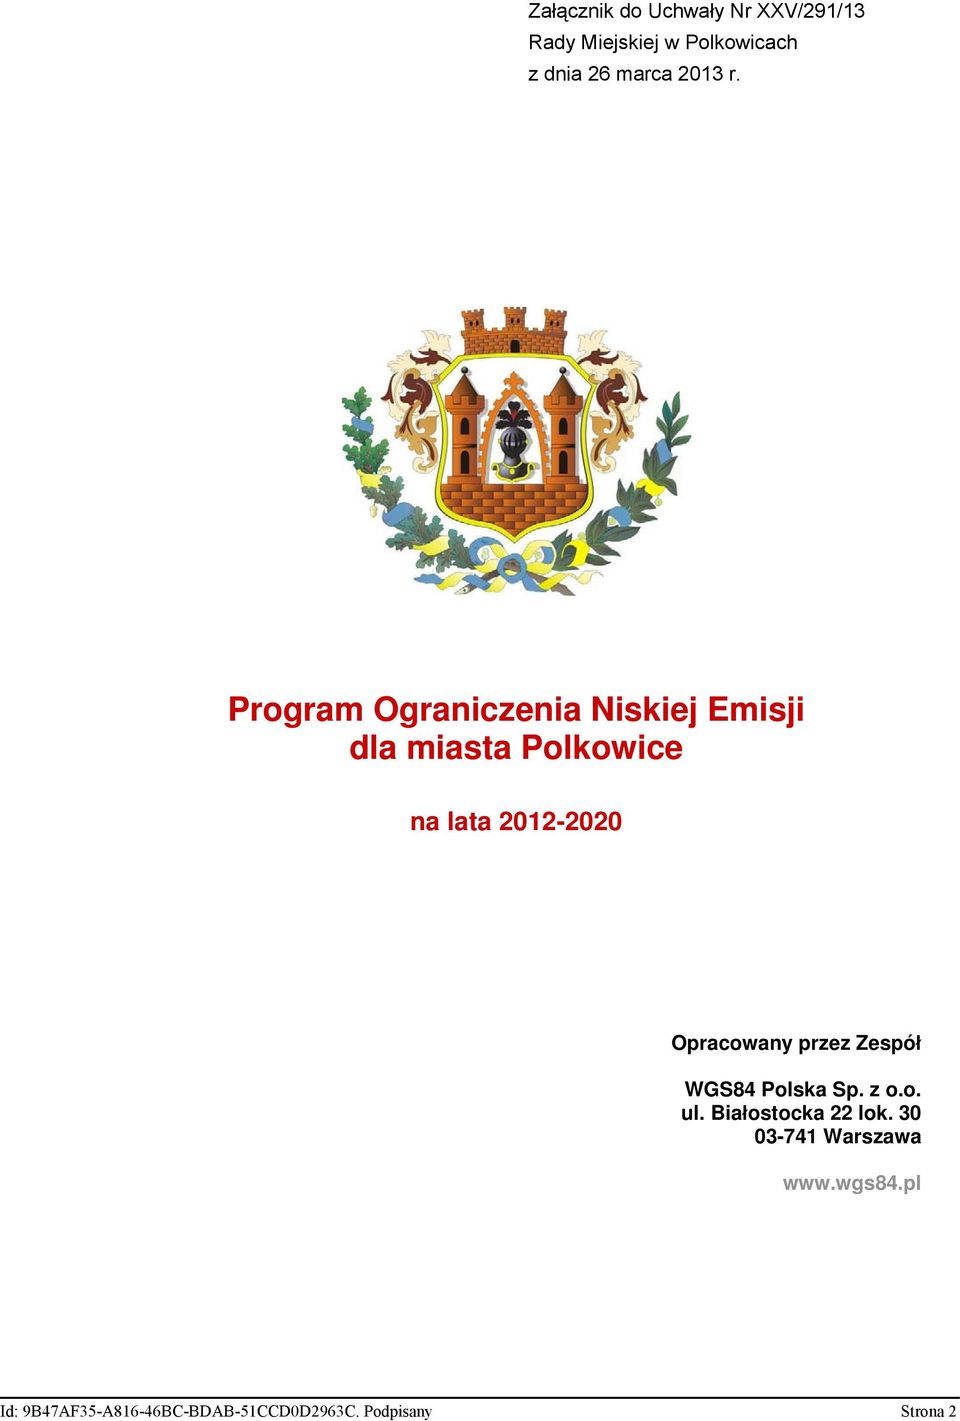 Program Ograniczenia Niskiej Emisji dla miasta Polkowice na lata 2012-2020